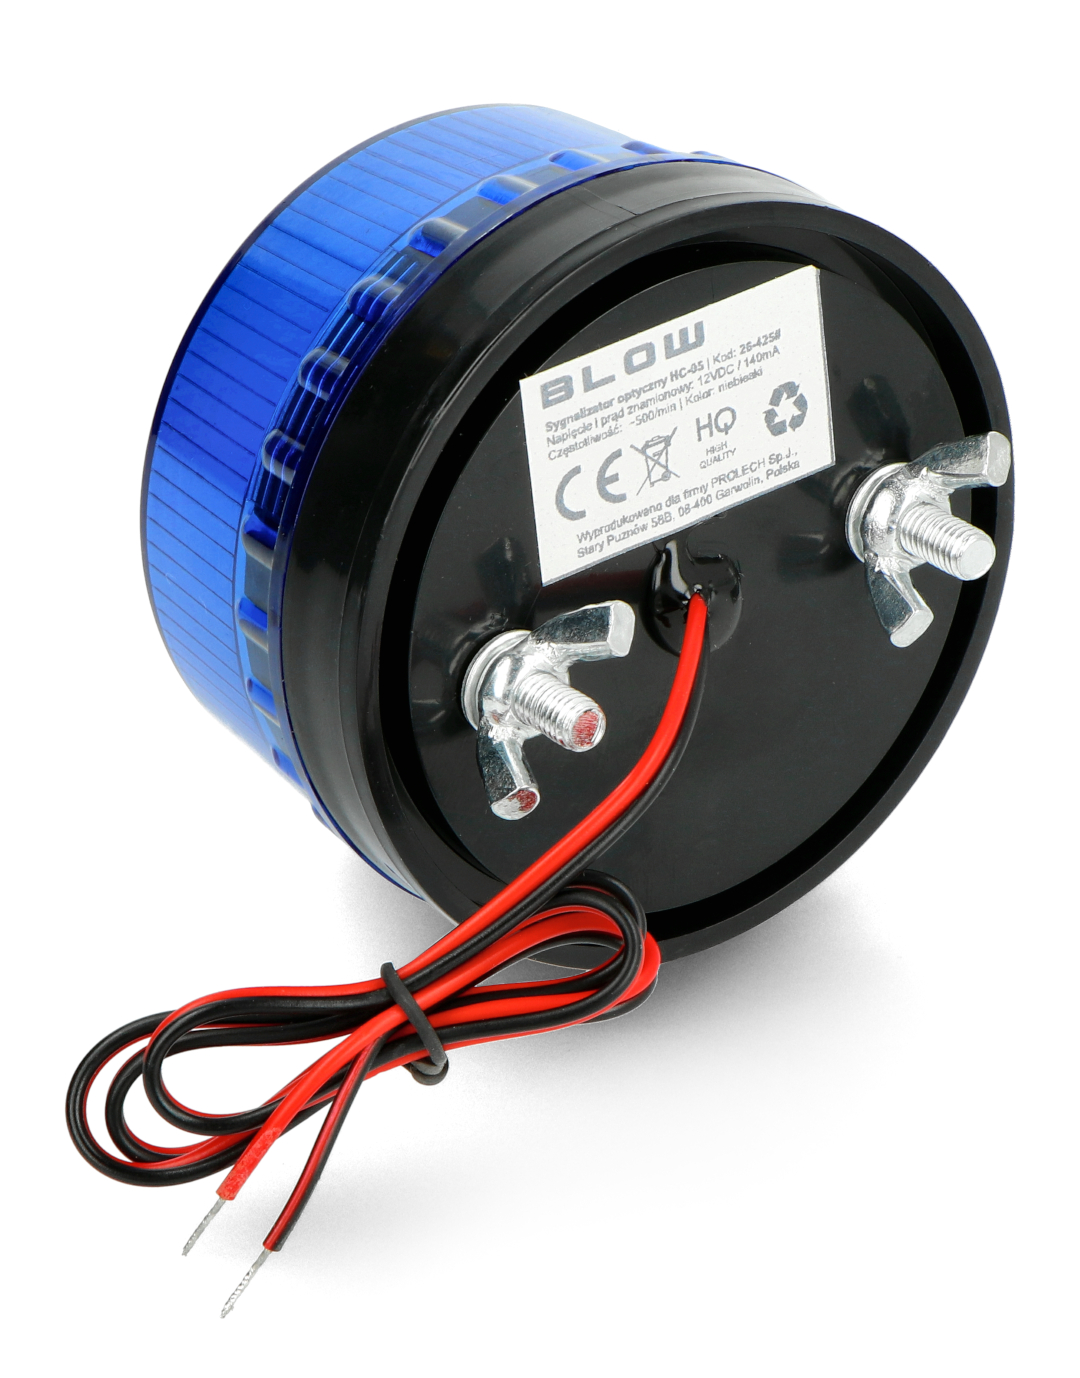 Blinklampe HC-05 - LED 12V - blau